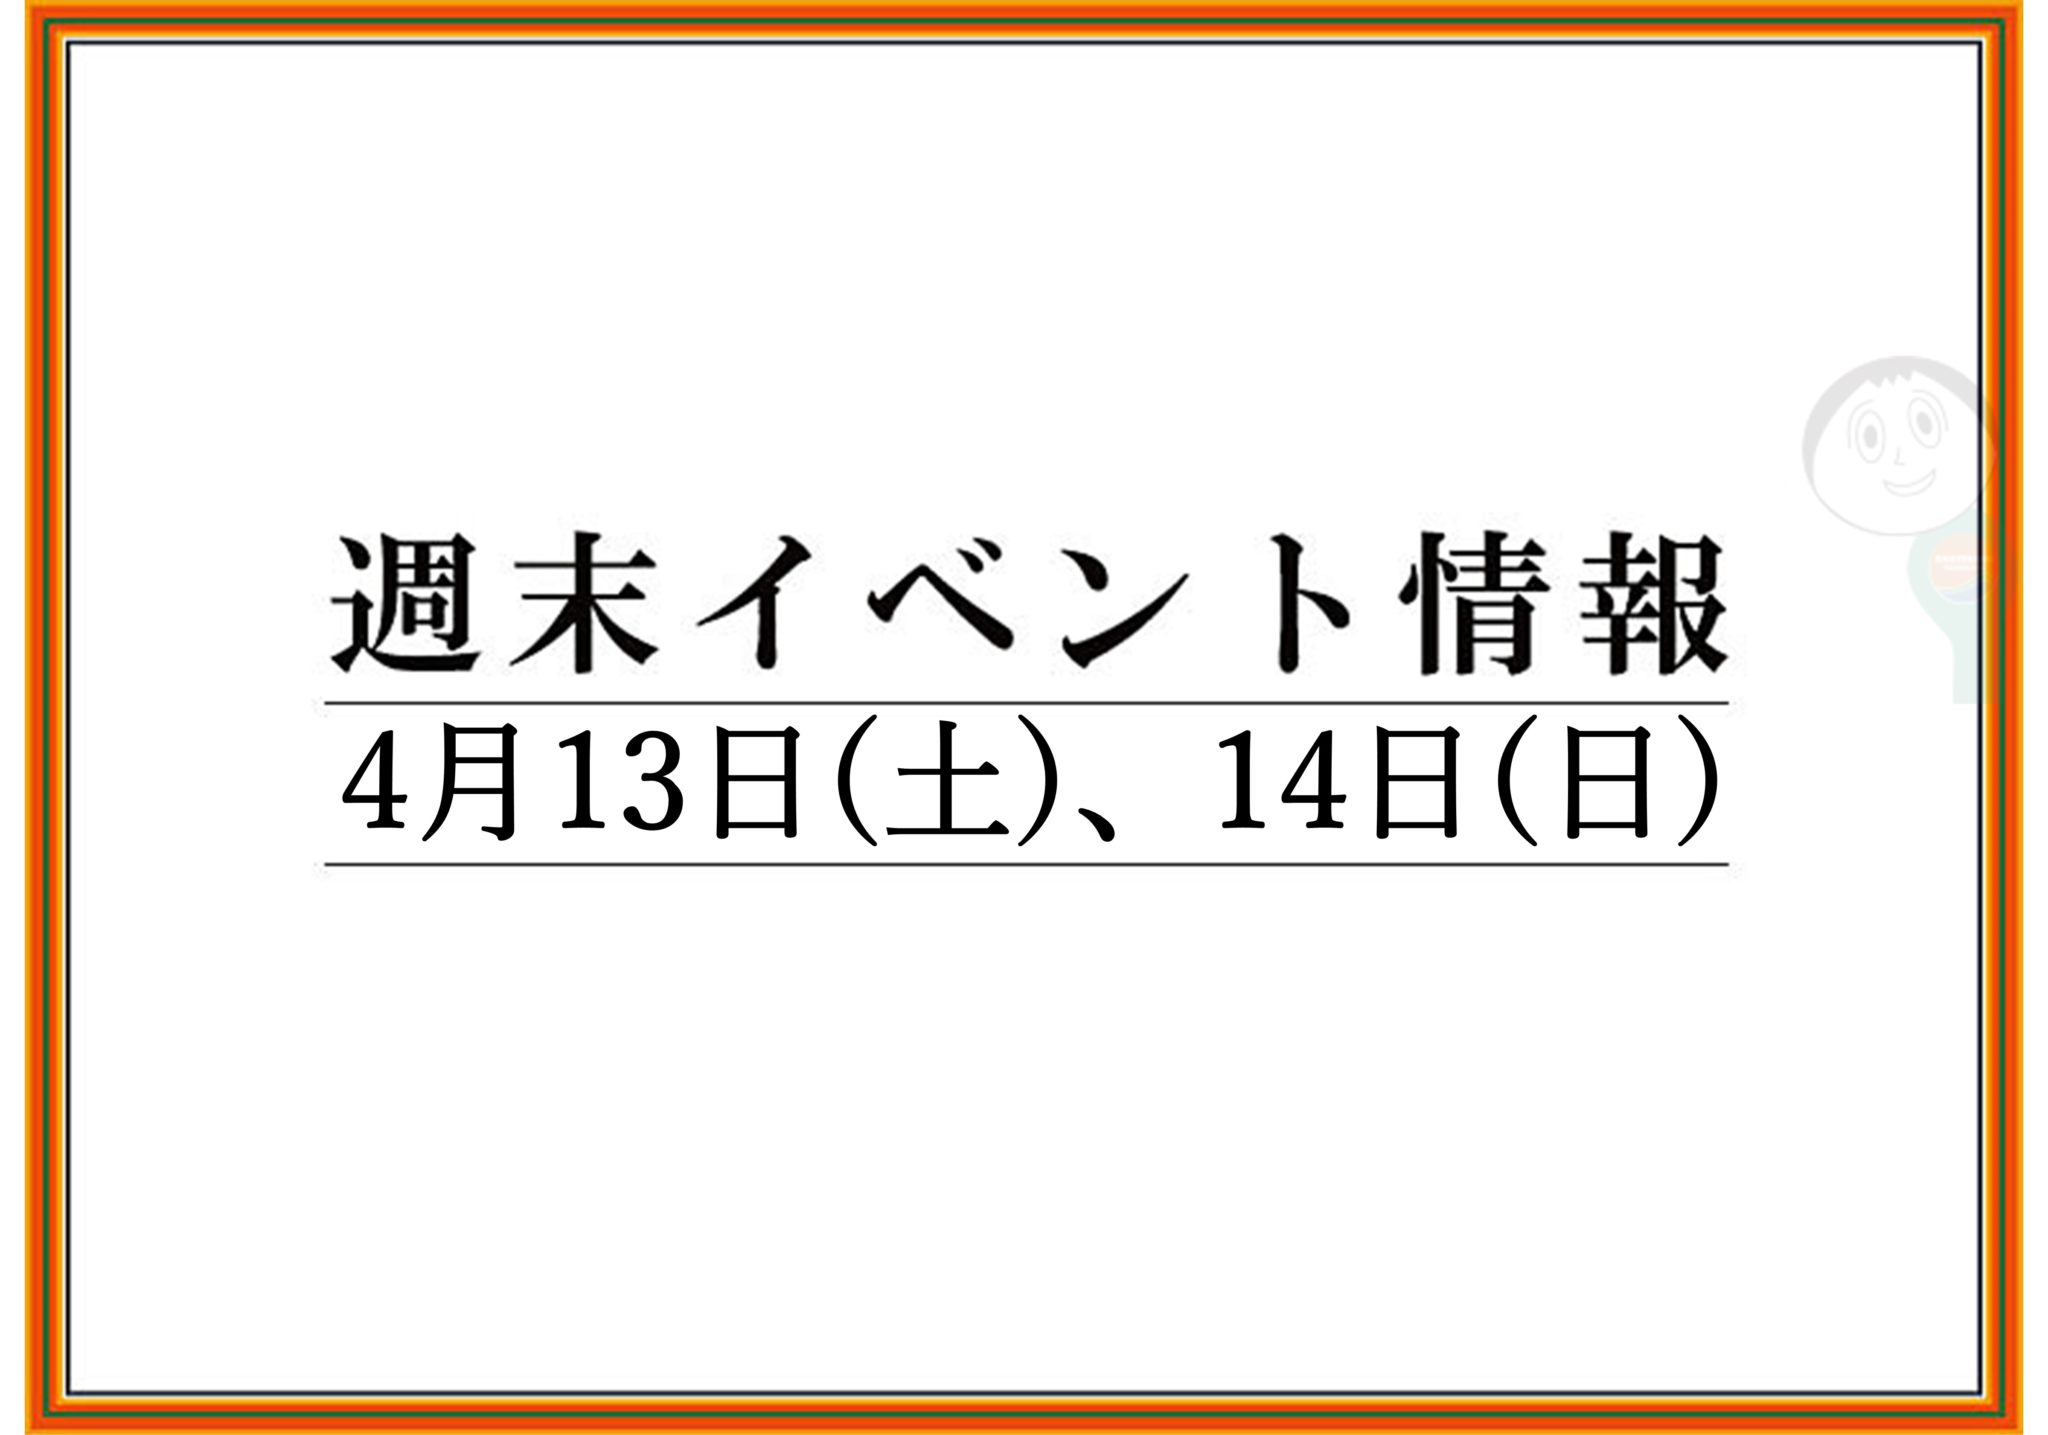 【まとめ】2019年 山形/上山/天童の週末イベント情報　4月13日(土),14日(日)